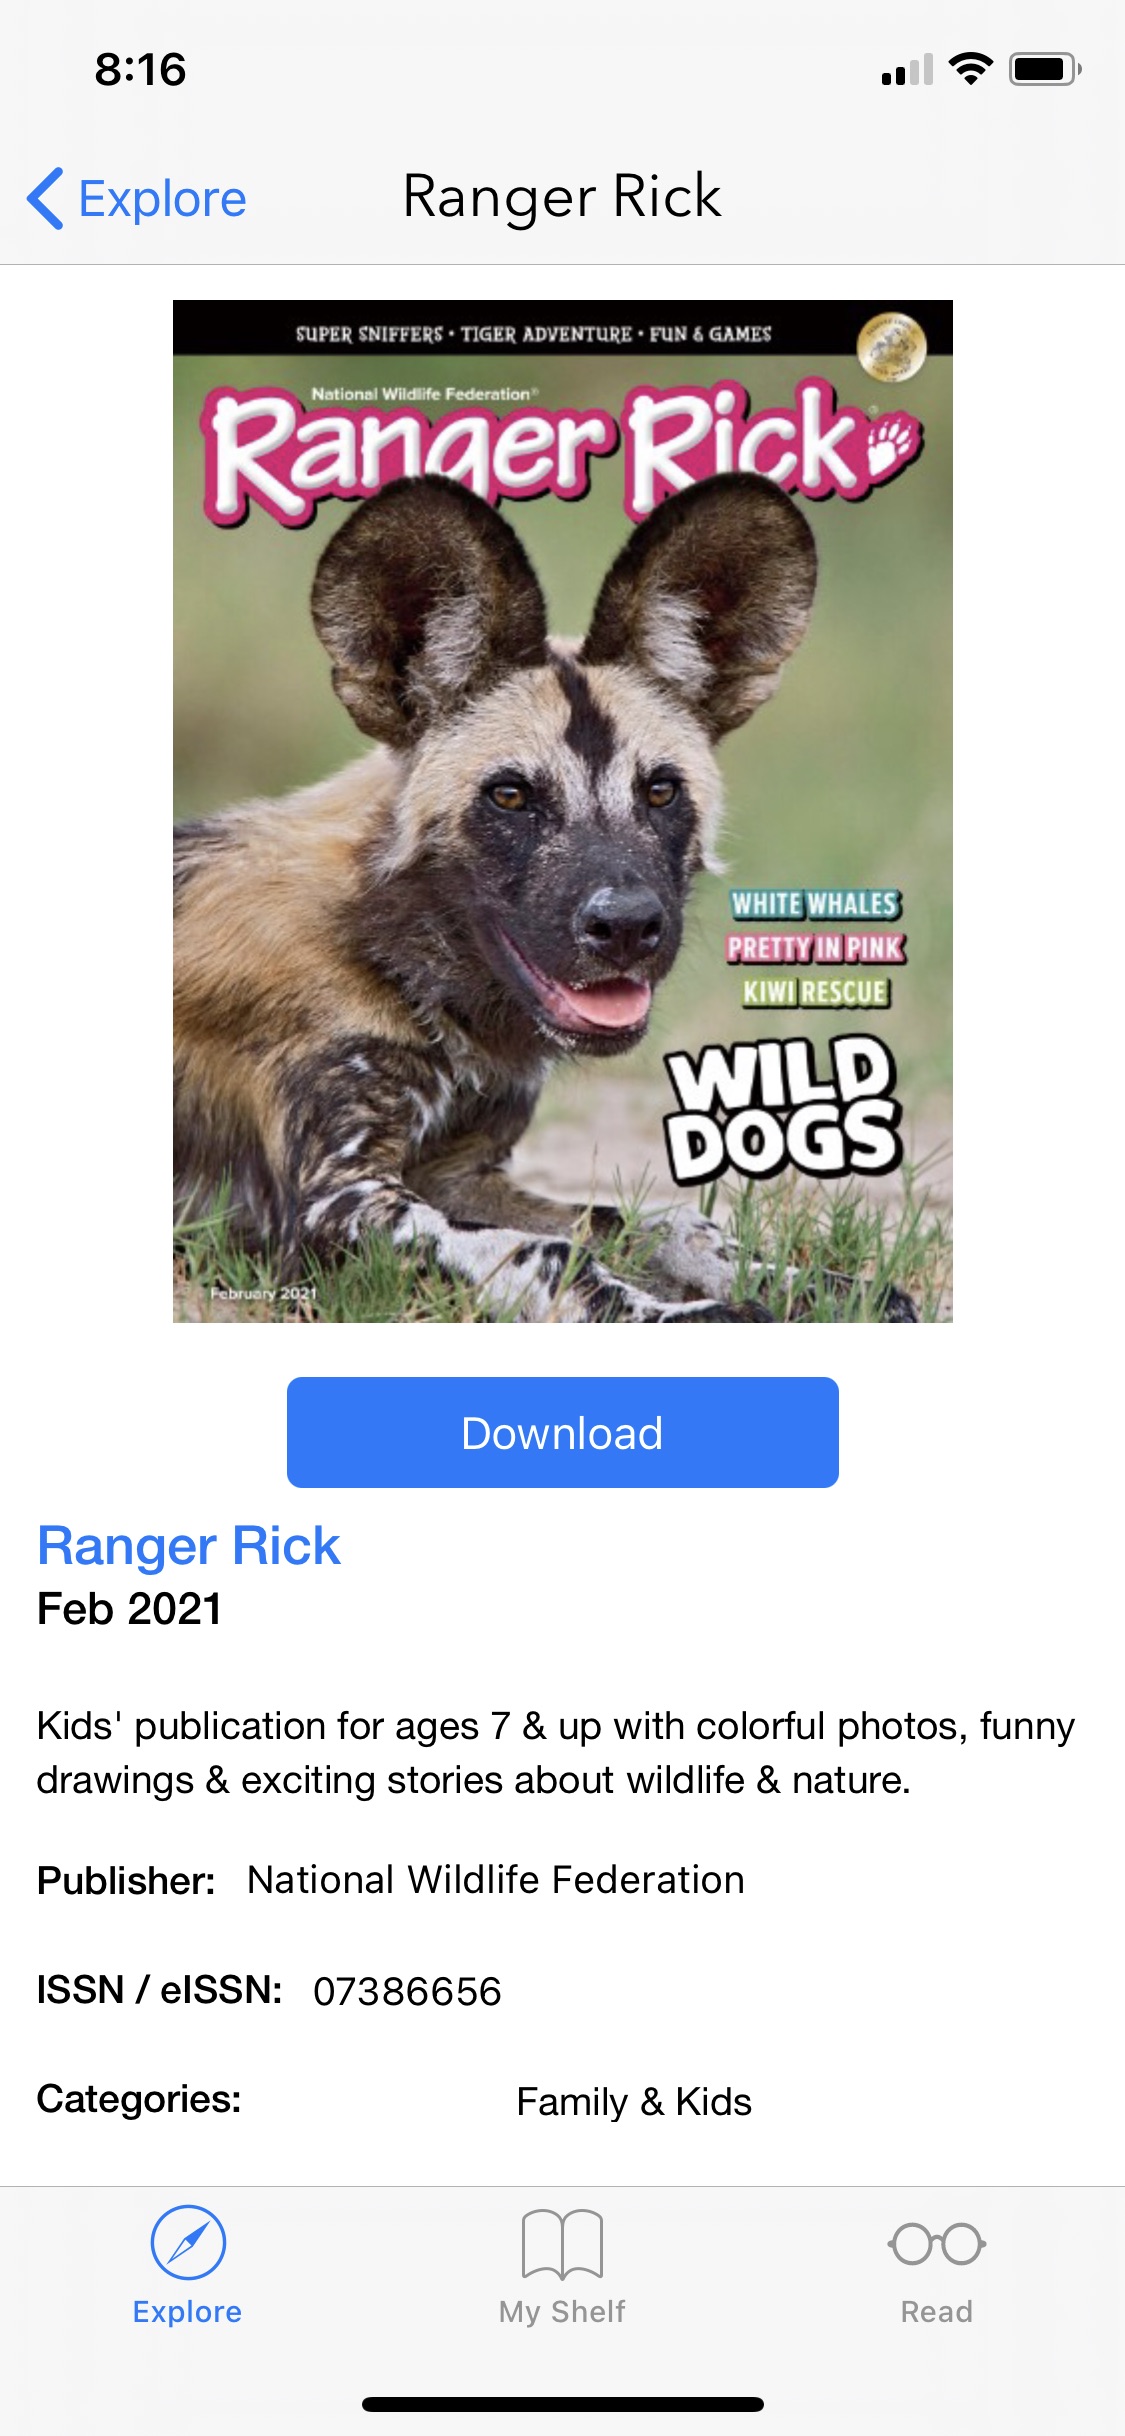 screenshot of Ranger Rick magazine on the Flipster app